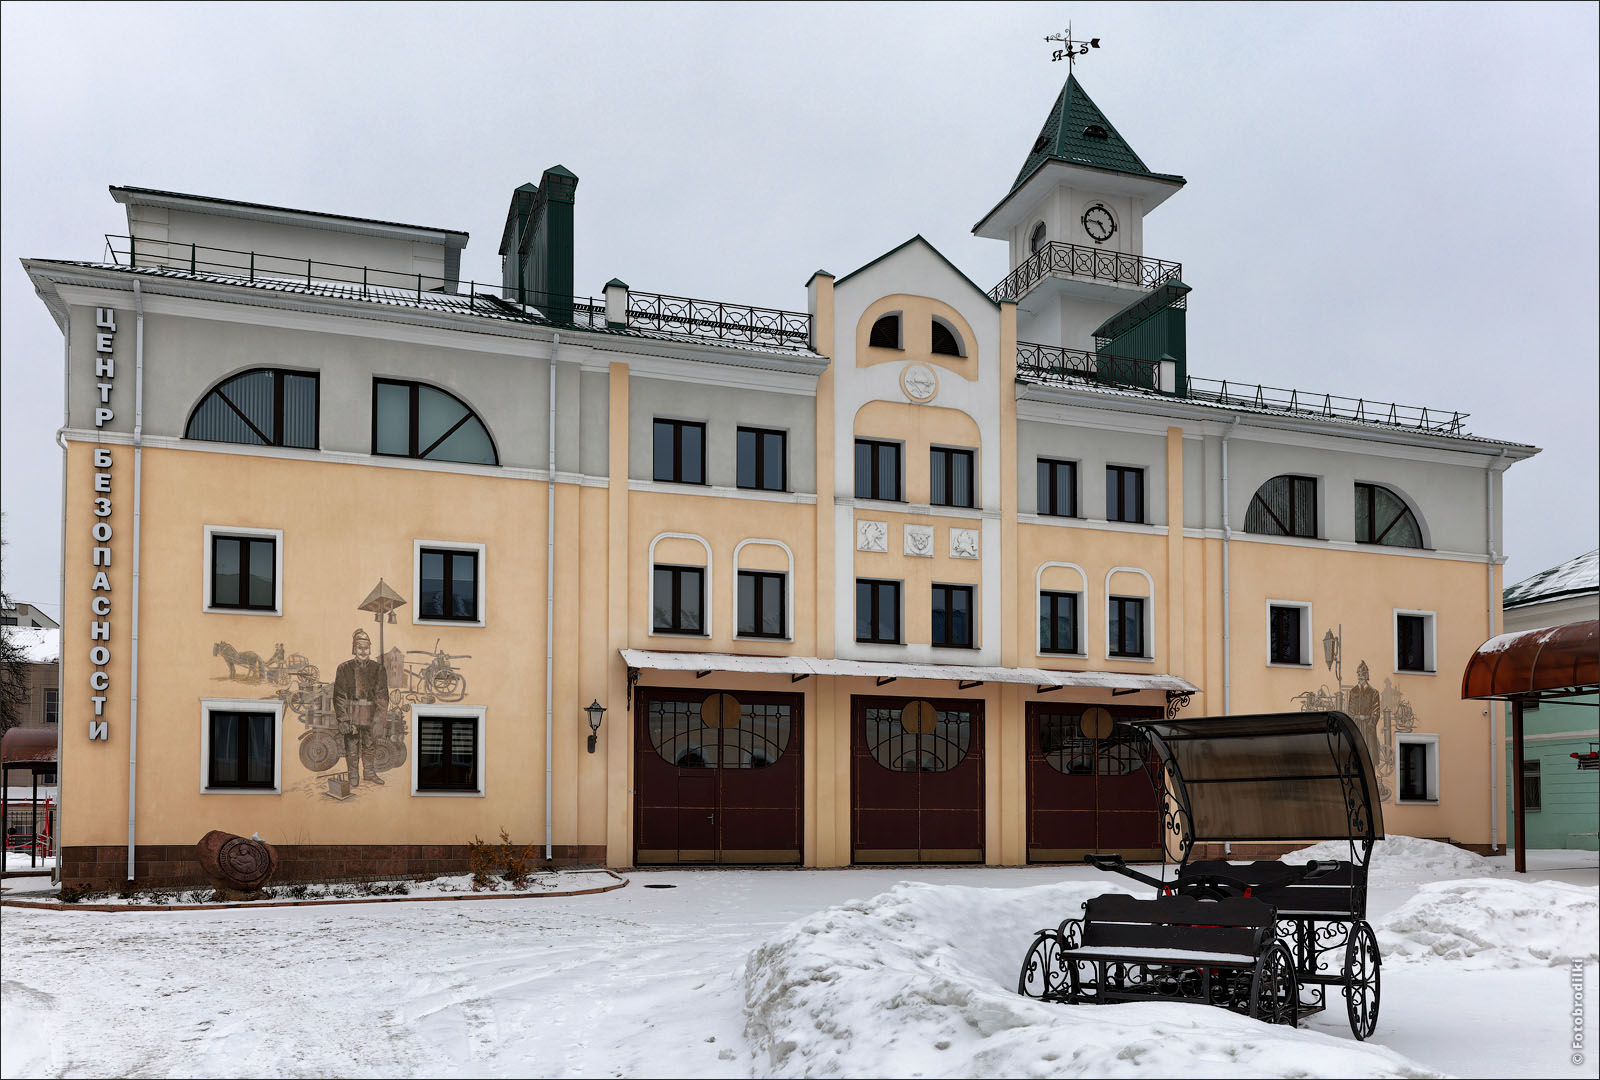 Бывшая пожарная часть XIX века, Могилев, Беларусь